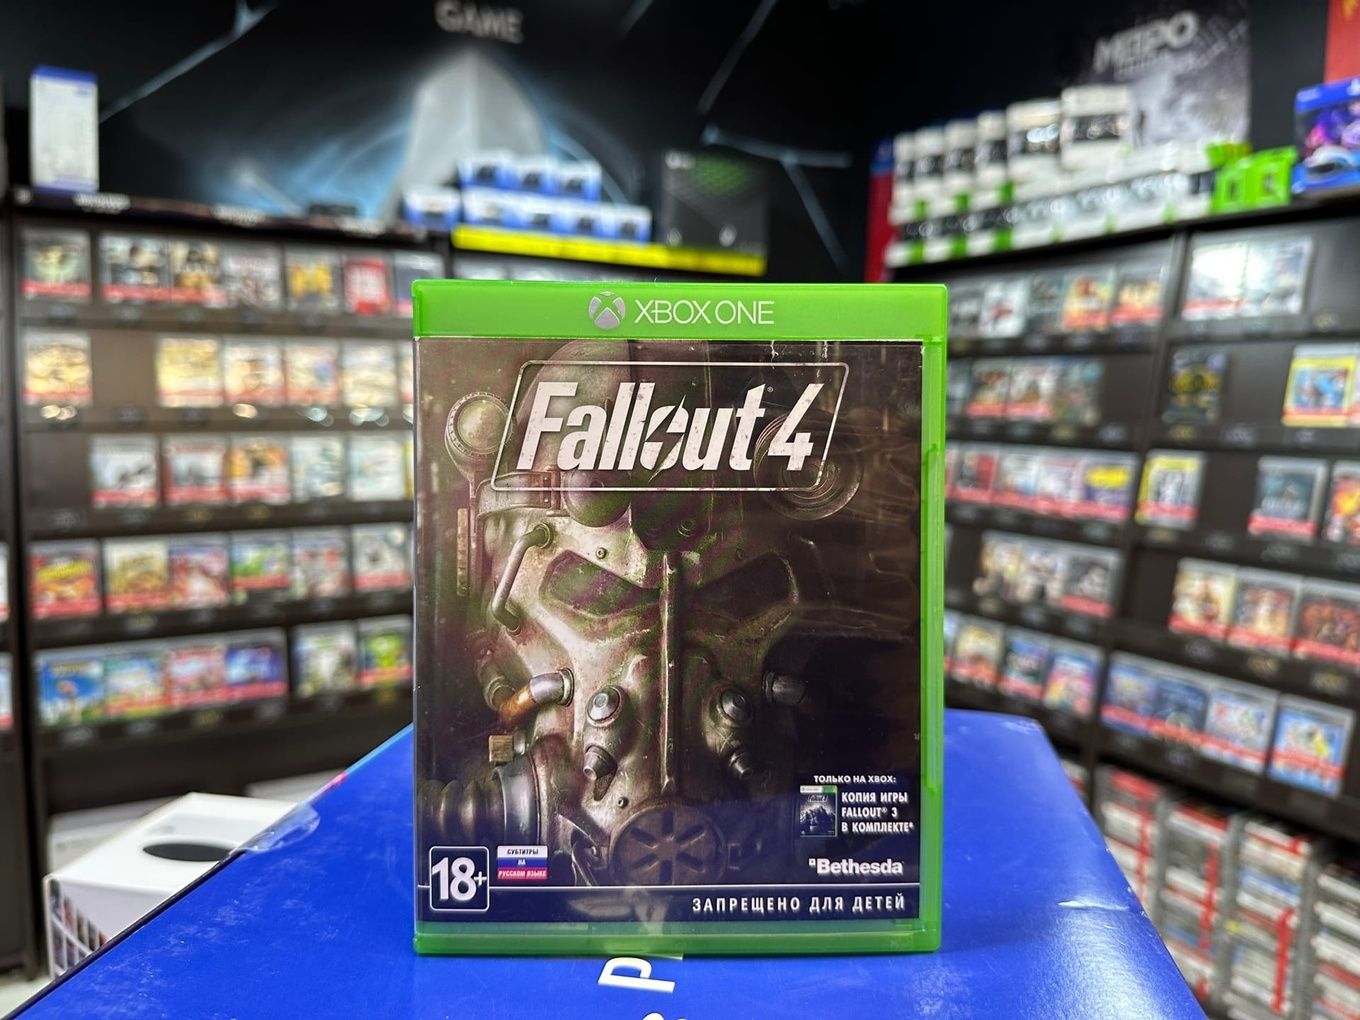 Игра fallout отзывы. Игры от Xbox. Фоллаут 4 купить на диске на ПК. Хбокс купить.